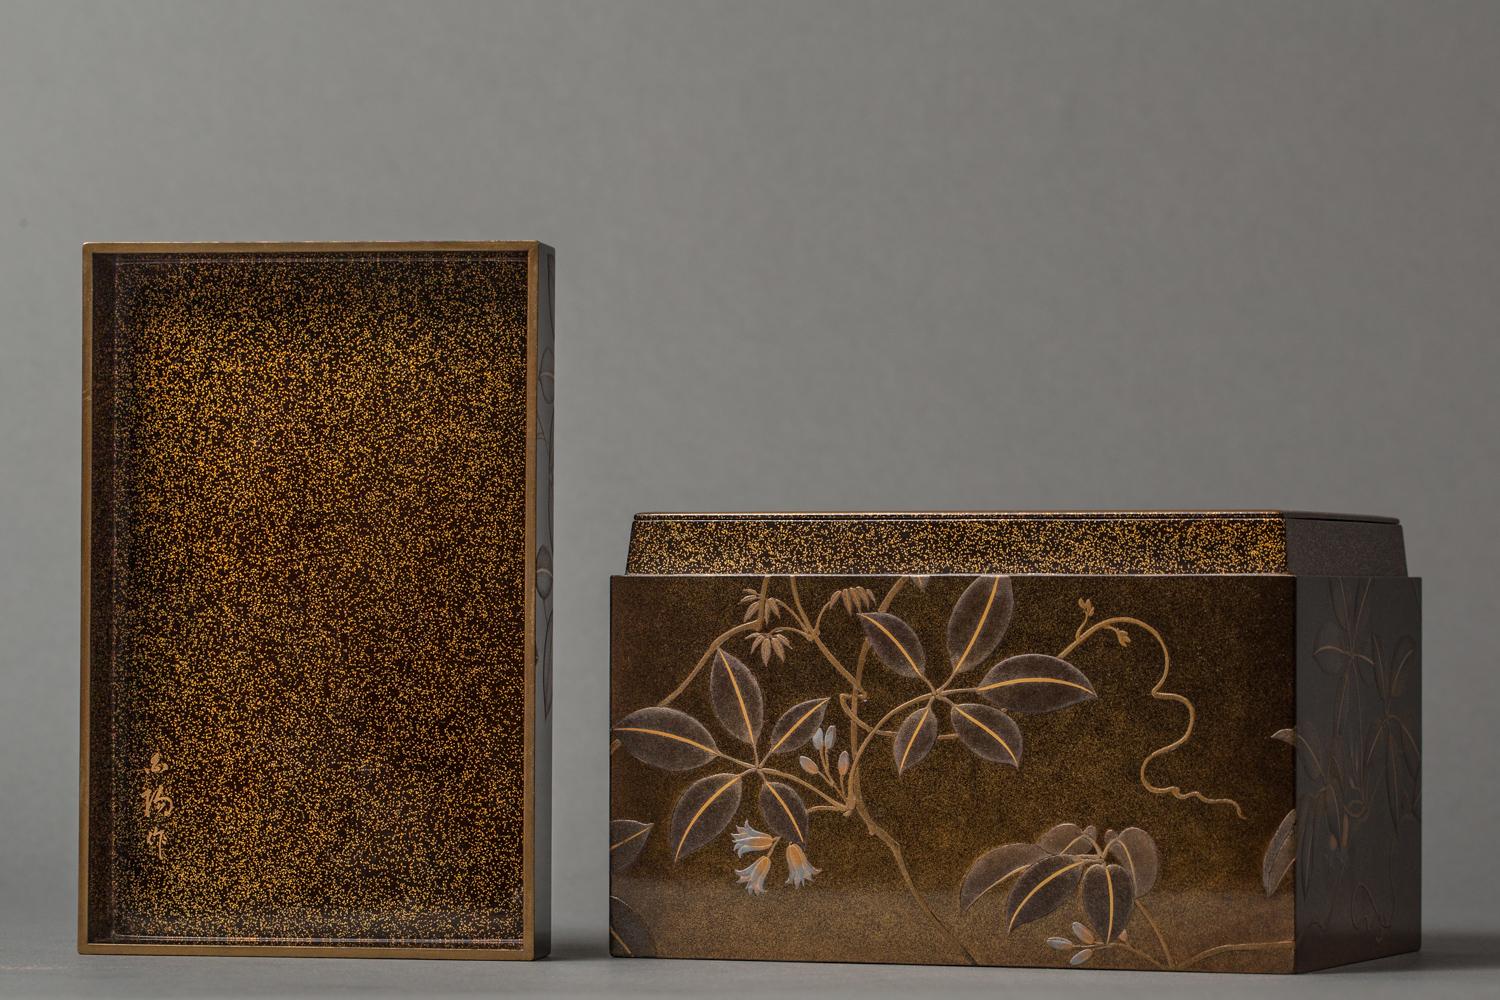 Lackdose aus der Meiji-Periode mit Nashiji-Schliff im Inneren und einem Tablett, das eine Öffnung für den Teebesen hat. Kommt mit Seide Zeitraum Jacke mit Krawatten und sugi Holz Sammler-Box. Die Signatur des Künstlers lautet: Hakuyo.